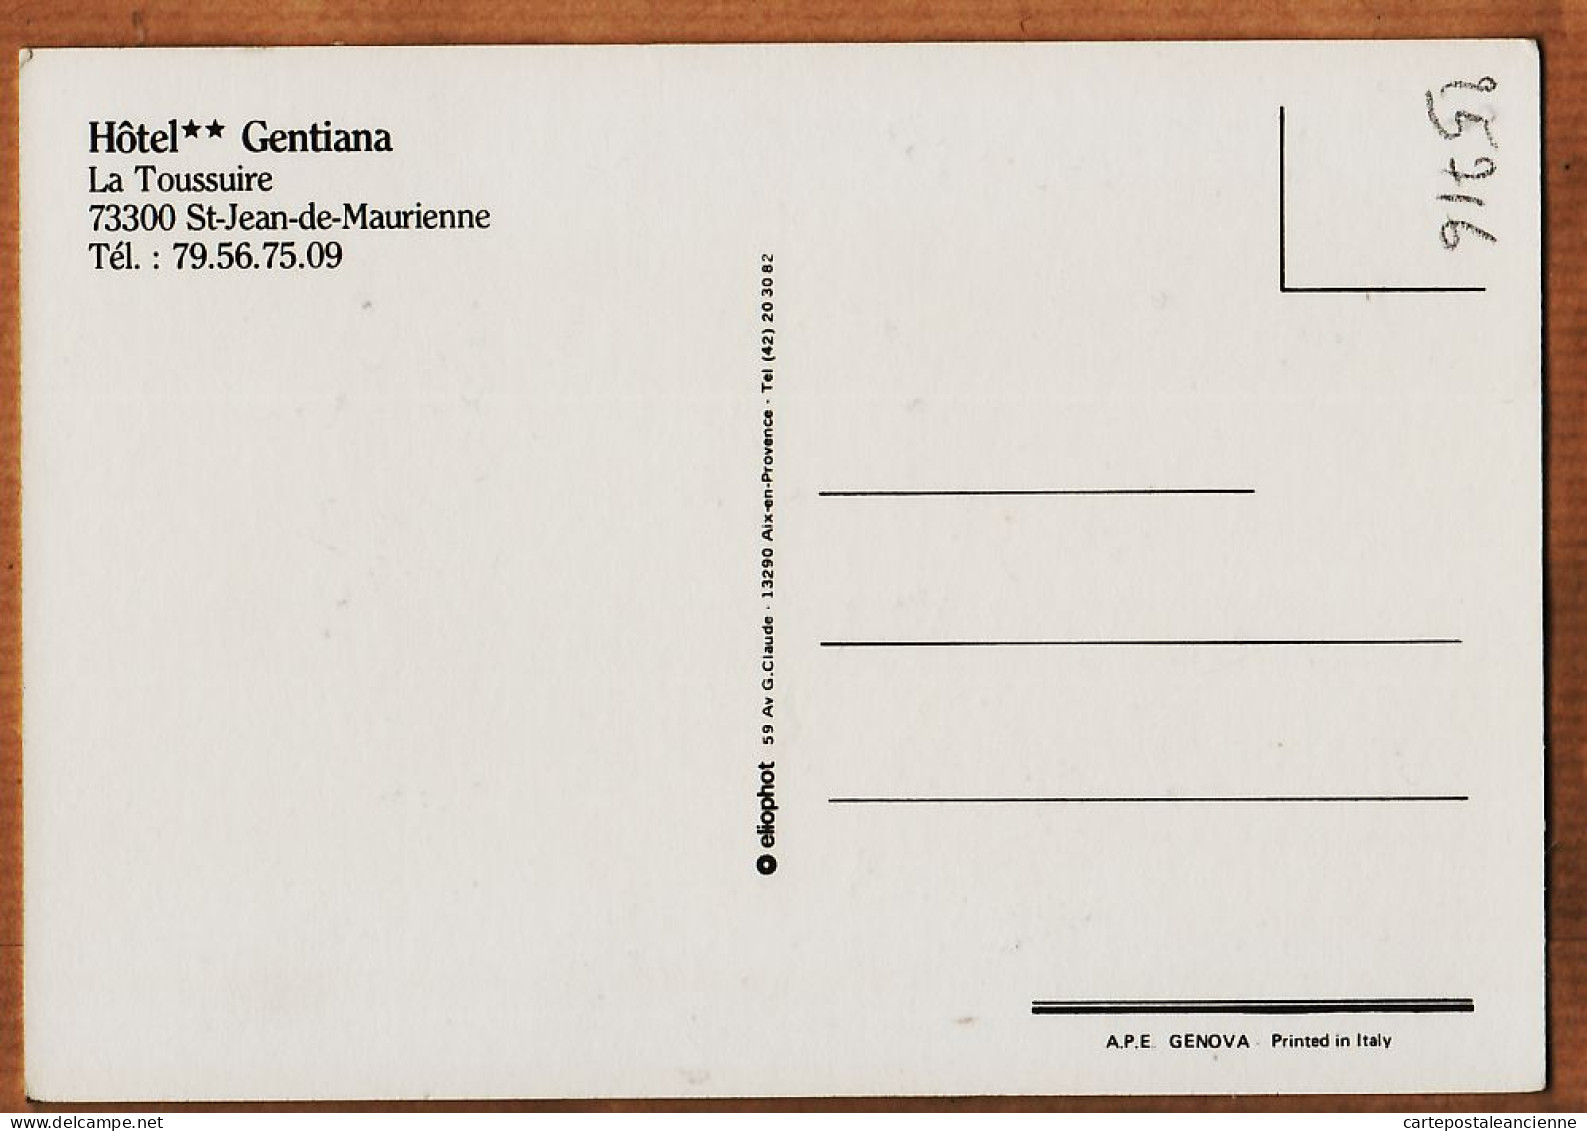 27764 / LA TOUSSUIRE St Saint JEAN De MAURIENNE 73-Savoie Hotel GENTIANA ** 2 Vues Extérieur Salle Manger 1975s ELIOPHO - Saint Jean De Maurienne